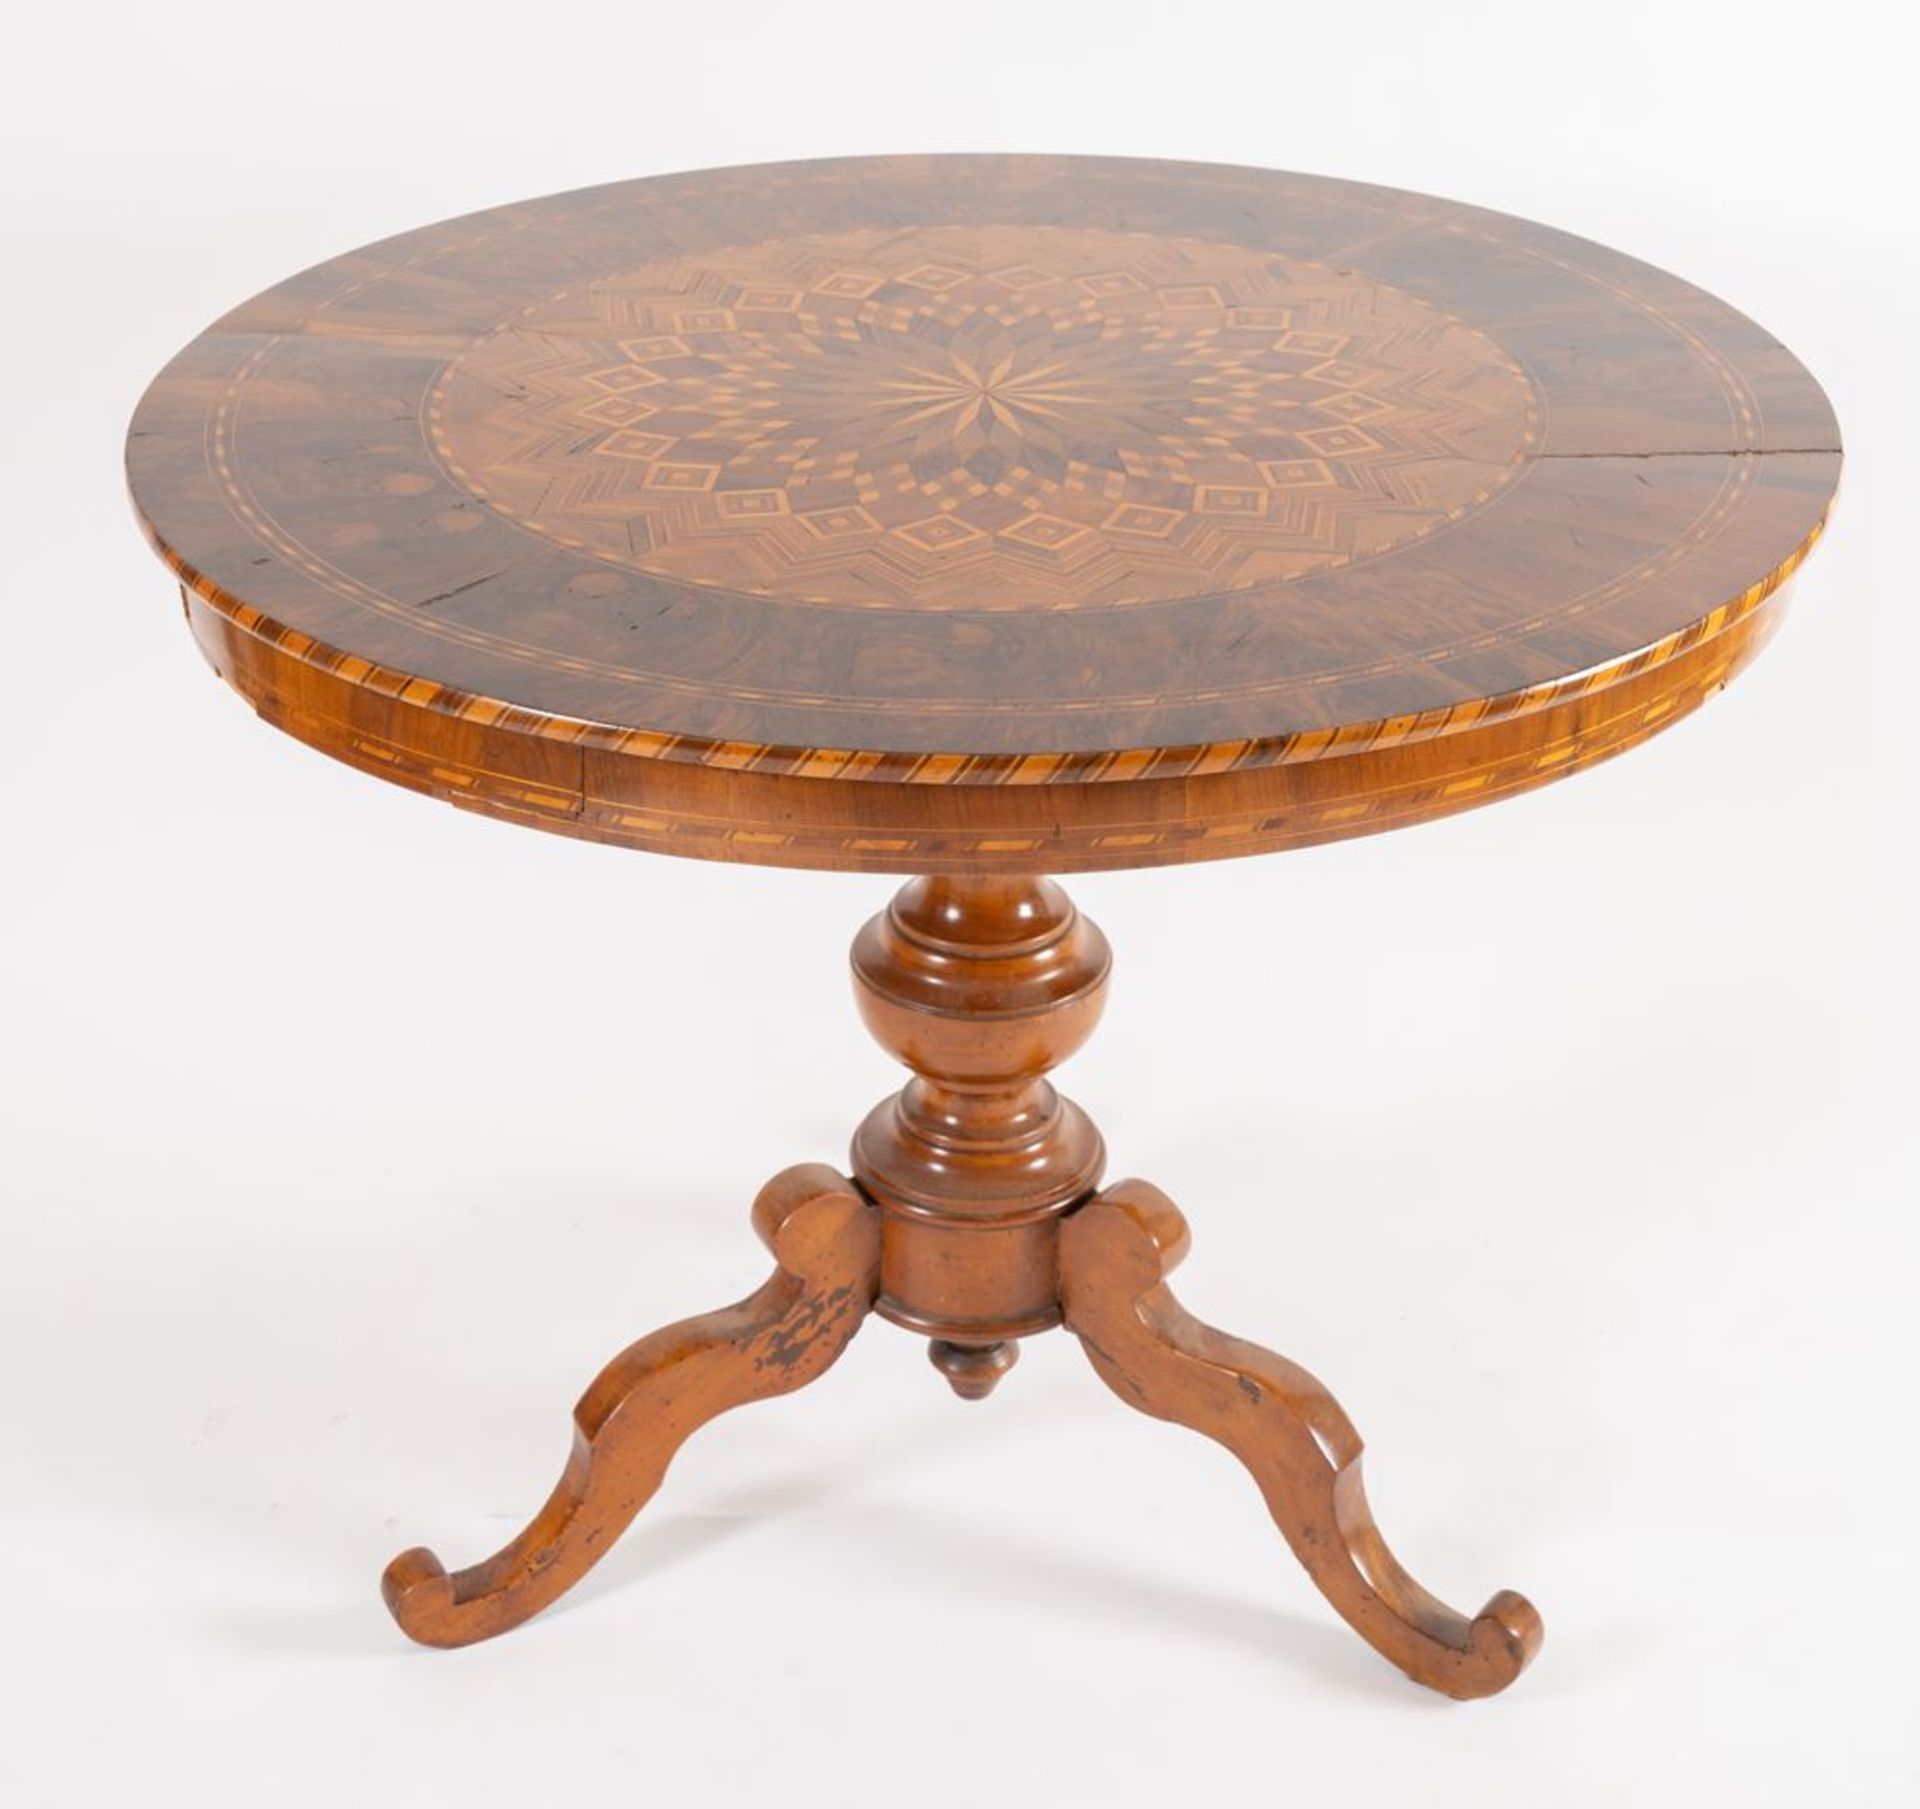 Tavolo tondo lastronato in legno di noce, acero e ciliegio, con motivi geometrici concentrici. Soste - Bild 4 aus 4